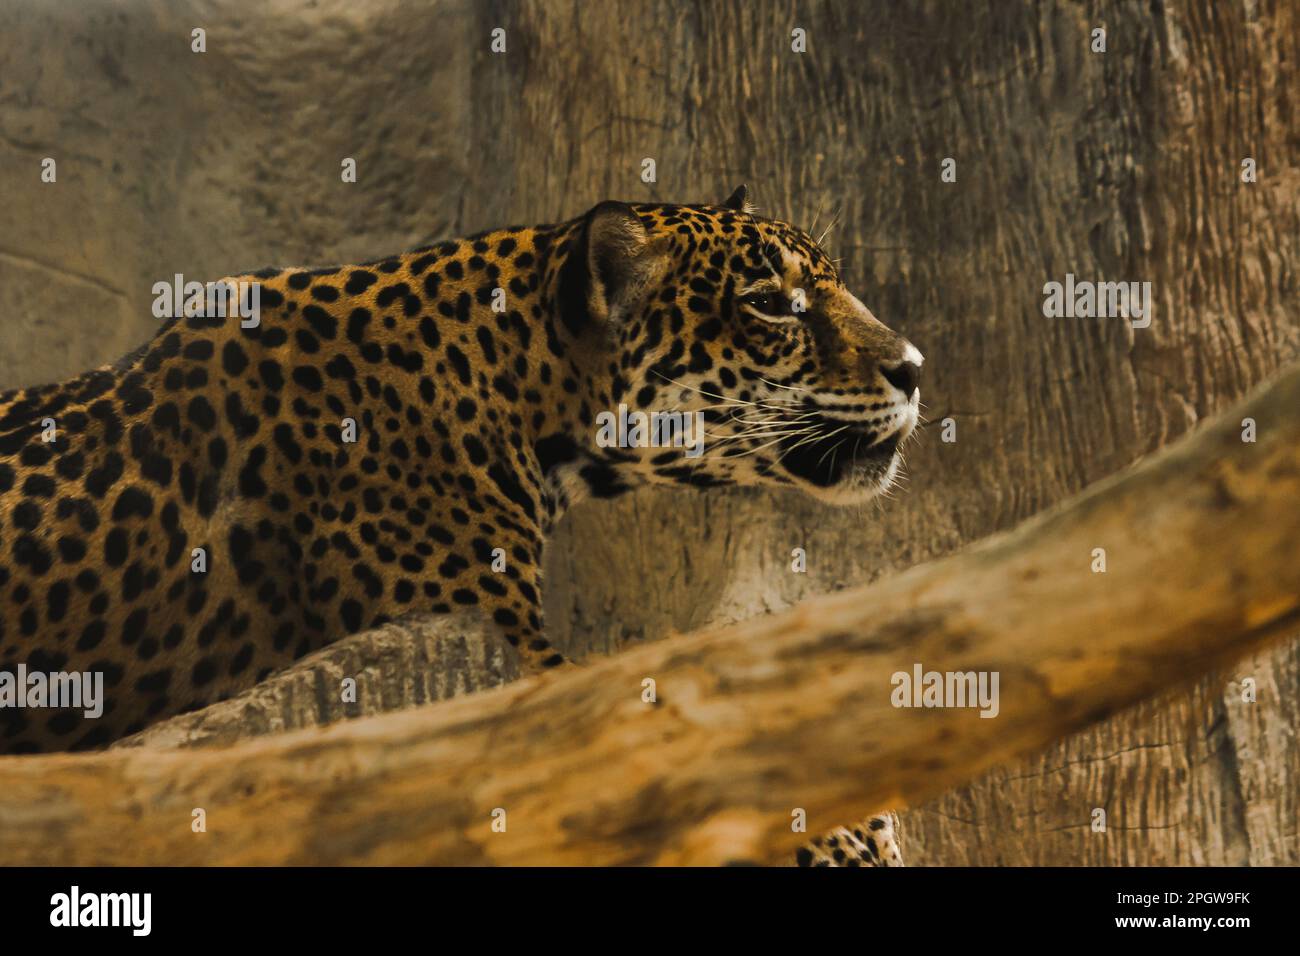 Jaguar im Zoo-Look der jaguar hat ein großes, schwarzes, rosenartiges Blumenmuster auf dem Körper auf einem goldgelben Pelz. Die unteren Wangen und Stockfoto